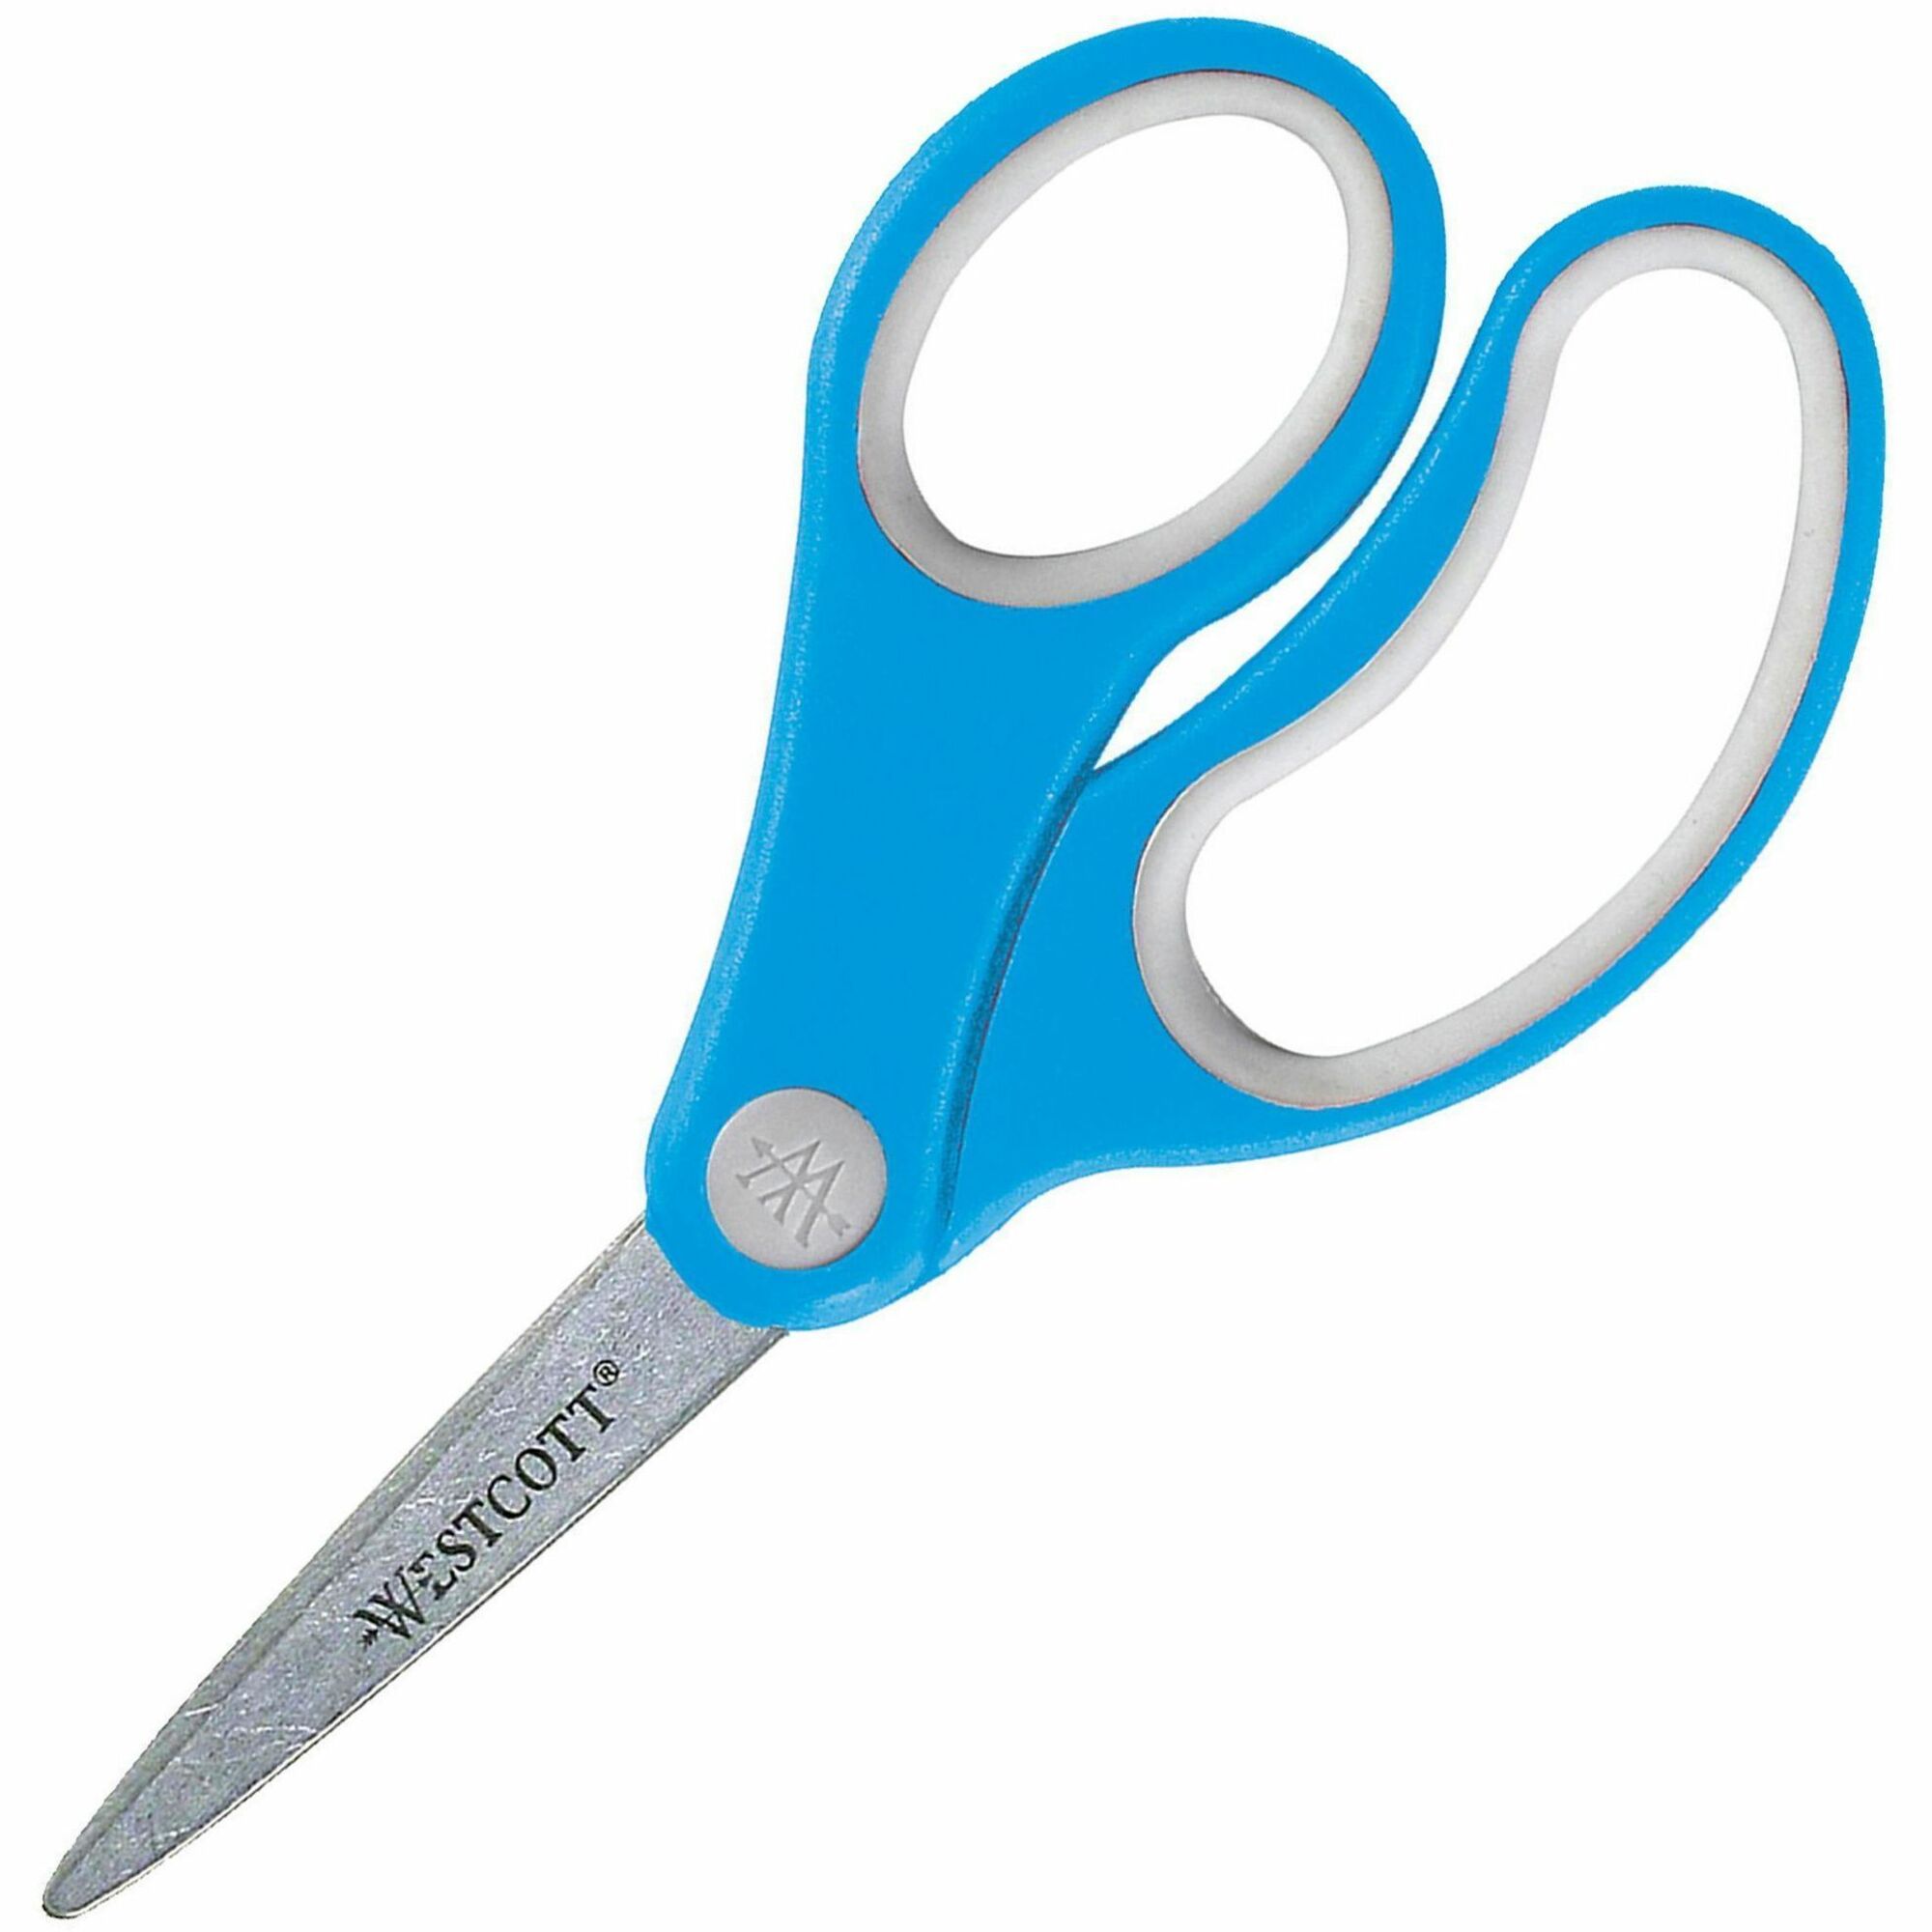 This Little Scissor